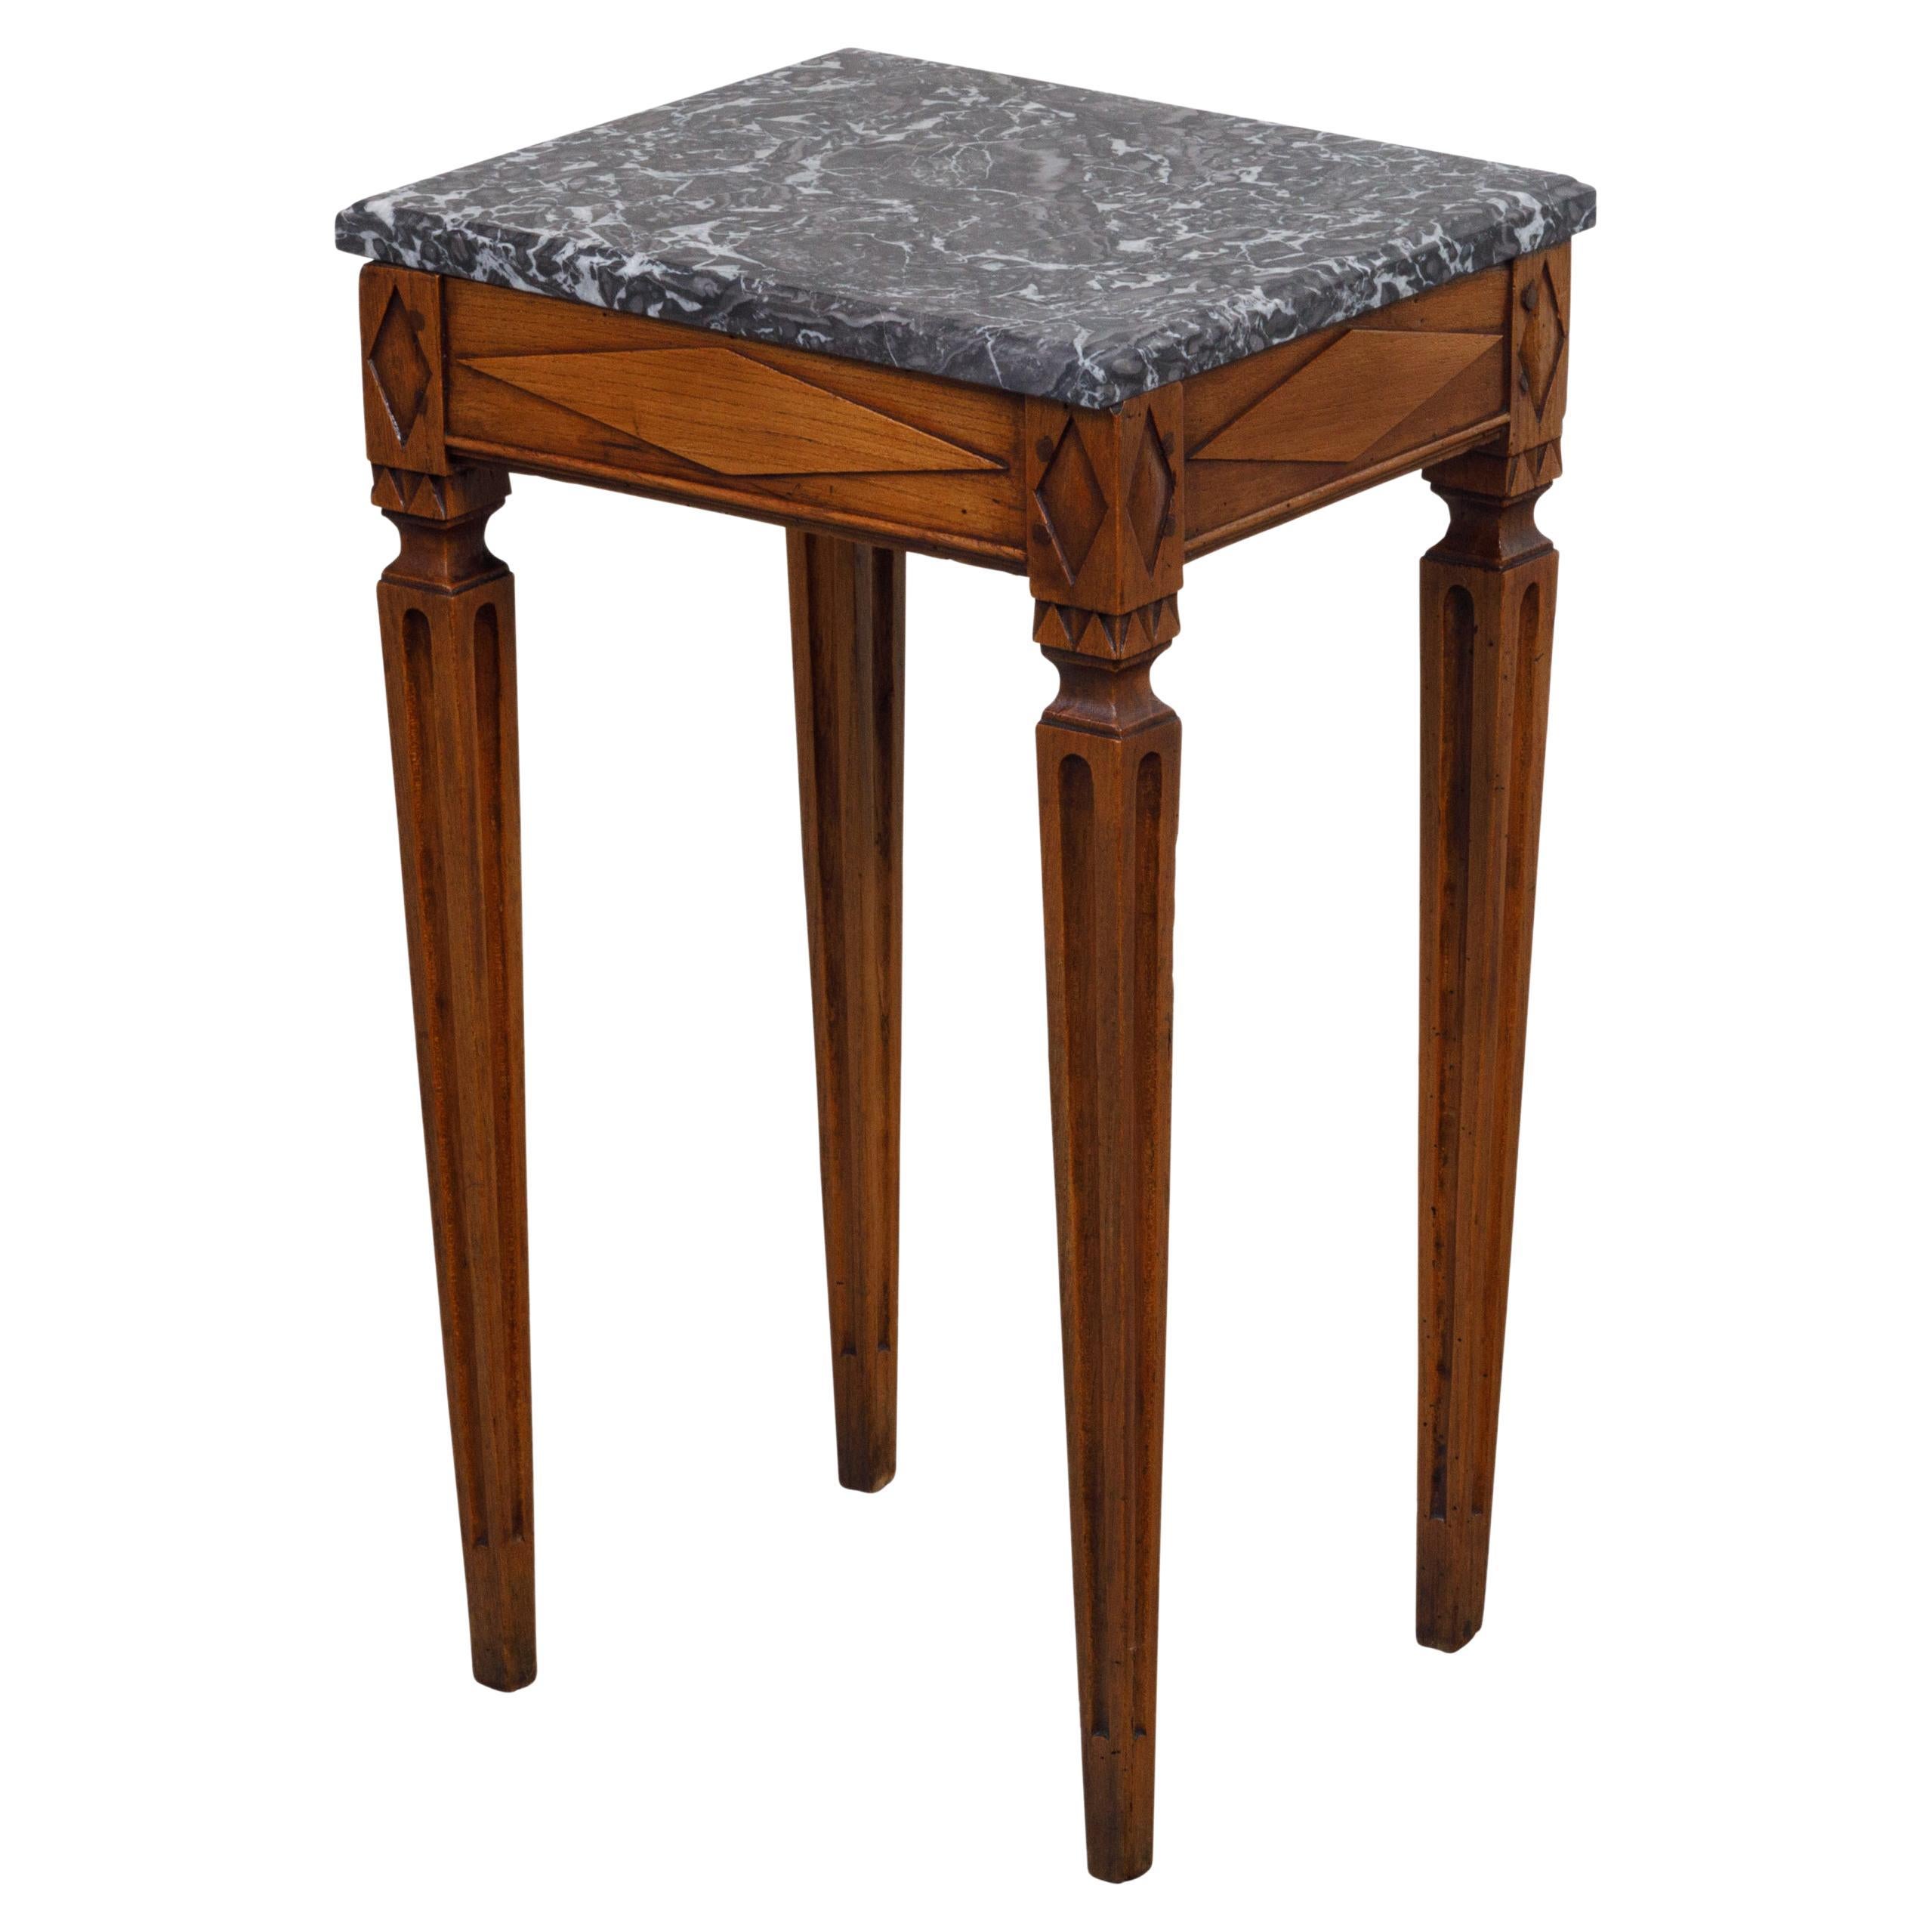 Französischer Holztisch im neoklassizistischen Stil des 19. Jahrhunderts mit grau geäderter Marmorplatte